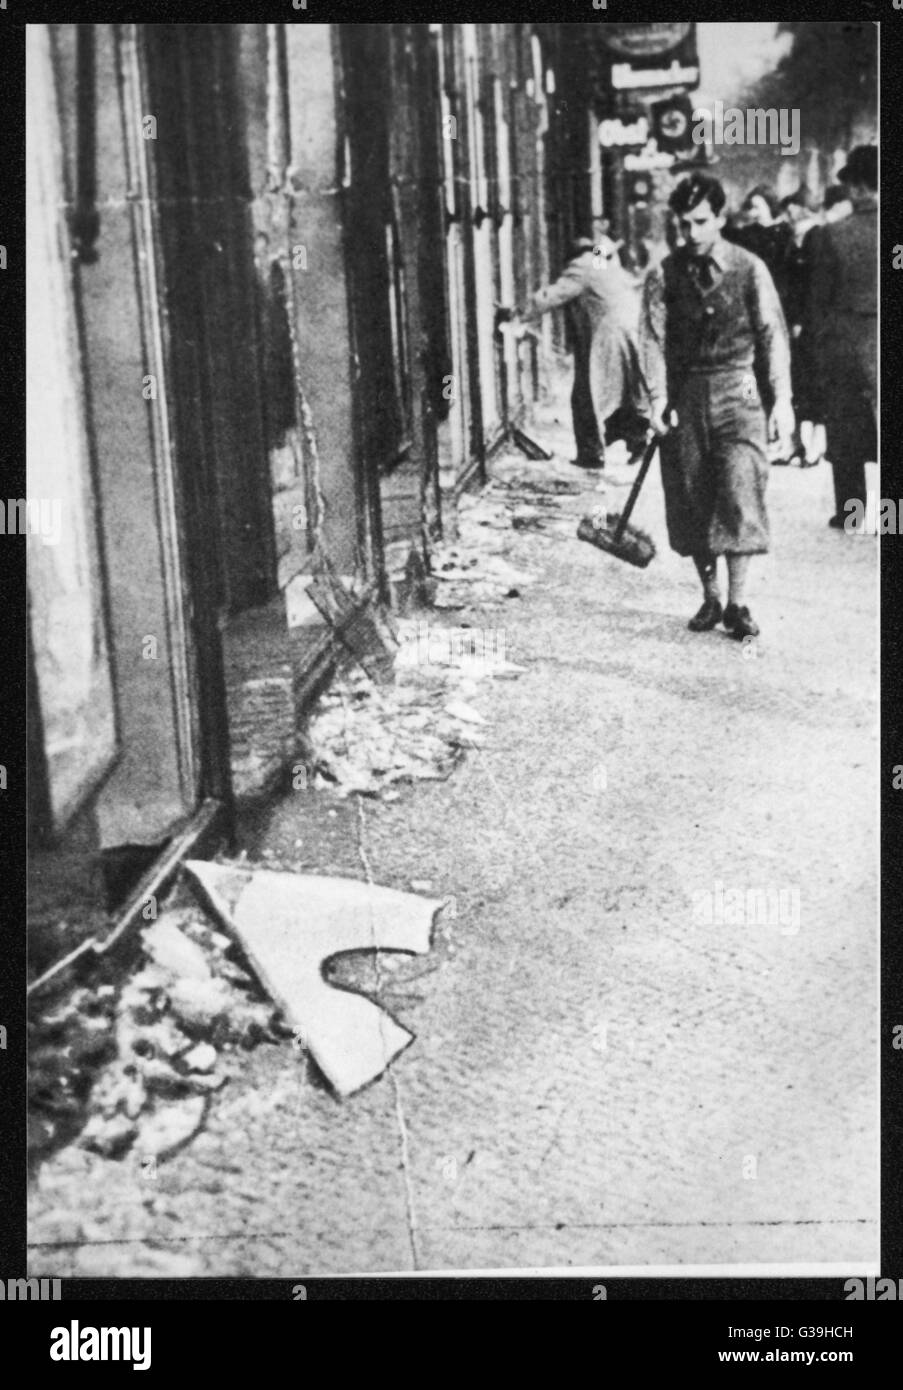 NIGHT OF THE BROKEN GLASS eine Reihe von Terroranschlägen wurden auf jüdische Synagogen und Geschäfte gemacht.  Dieses Foto zeigt die Lichtung die Glasscherben geplünderten Geschäften.     Datum: 9. November 1938 Stockfoto